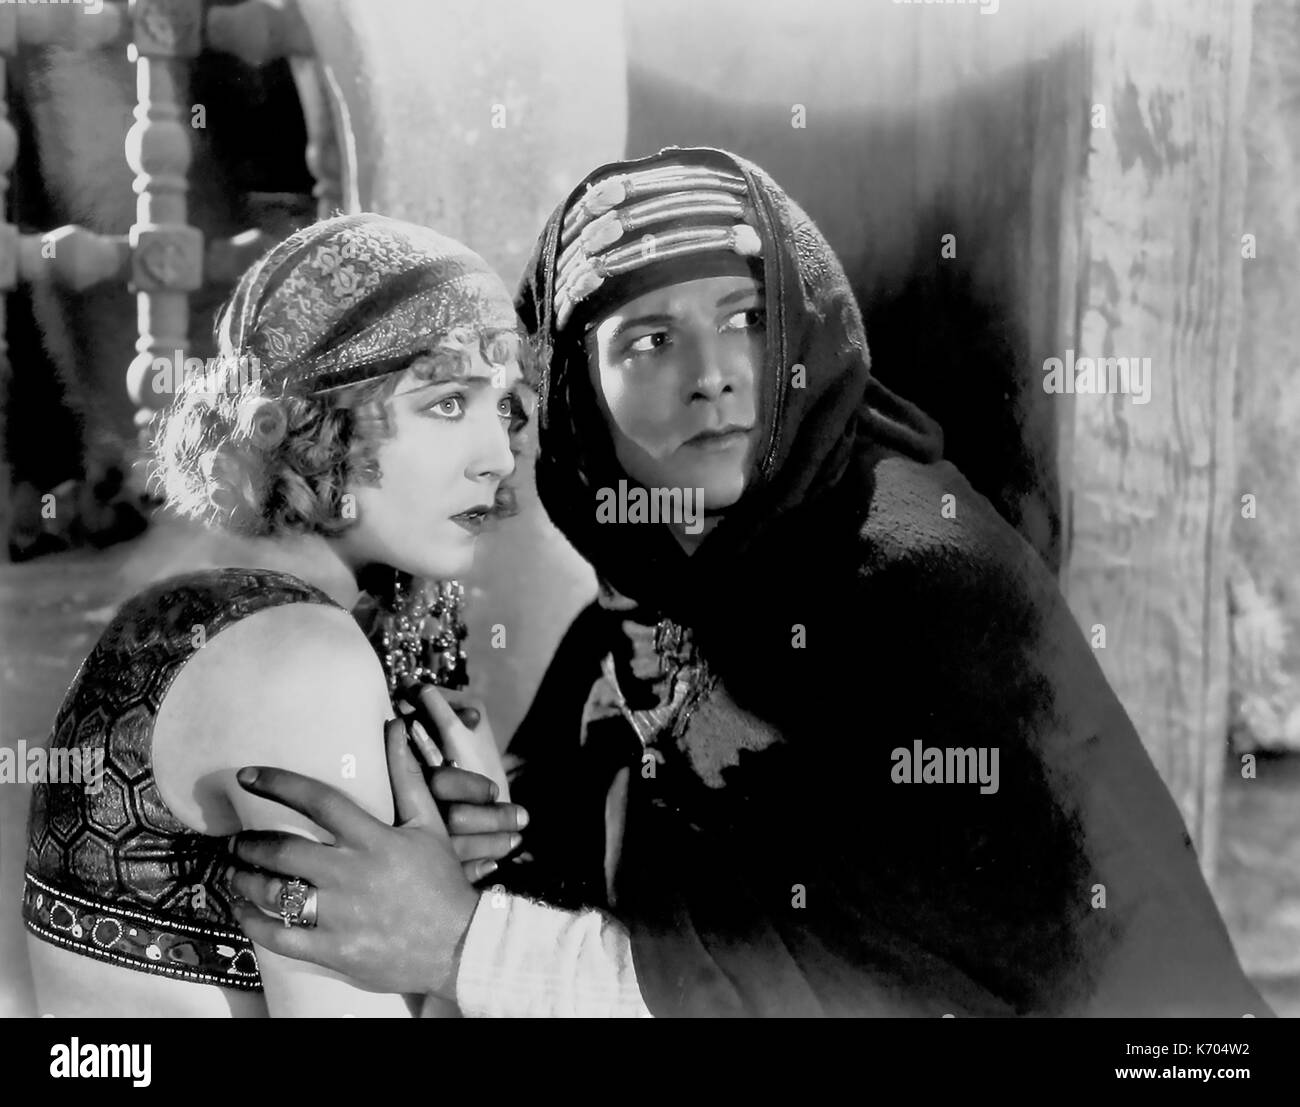 Rudolph VALENTINO (1895-1926) acteur de cinéma italien-américain avec Agnes Ayres dans le film silencieux de 1921 Le Sheik Banque D'Images